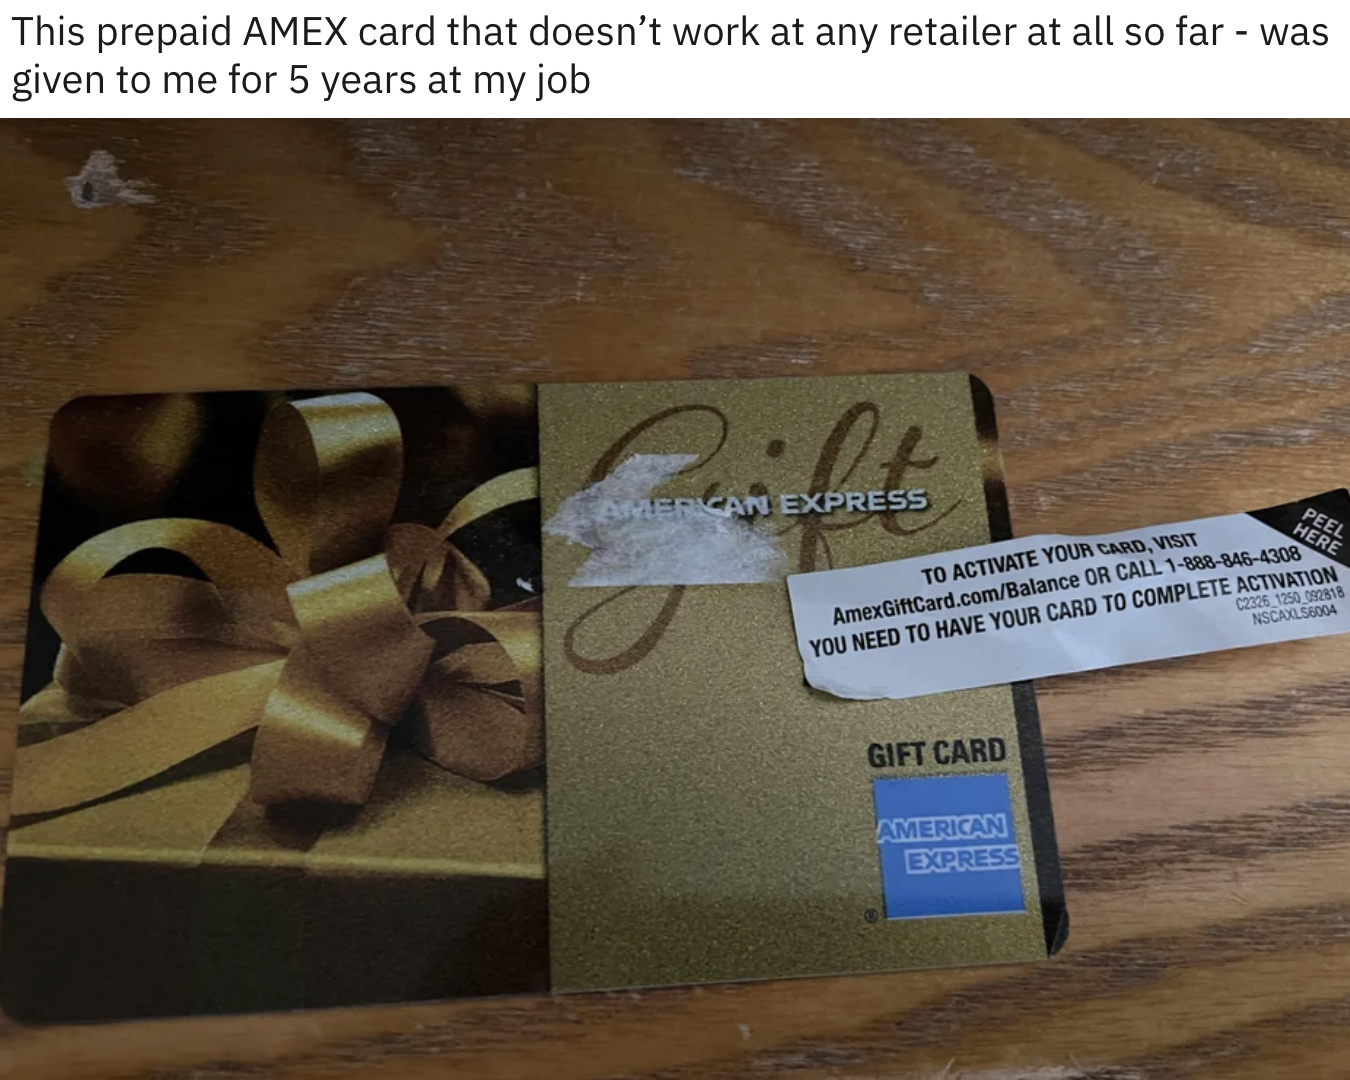 An AmEx card